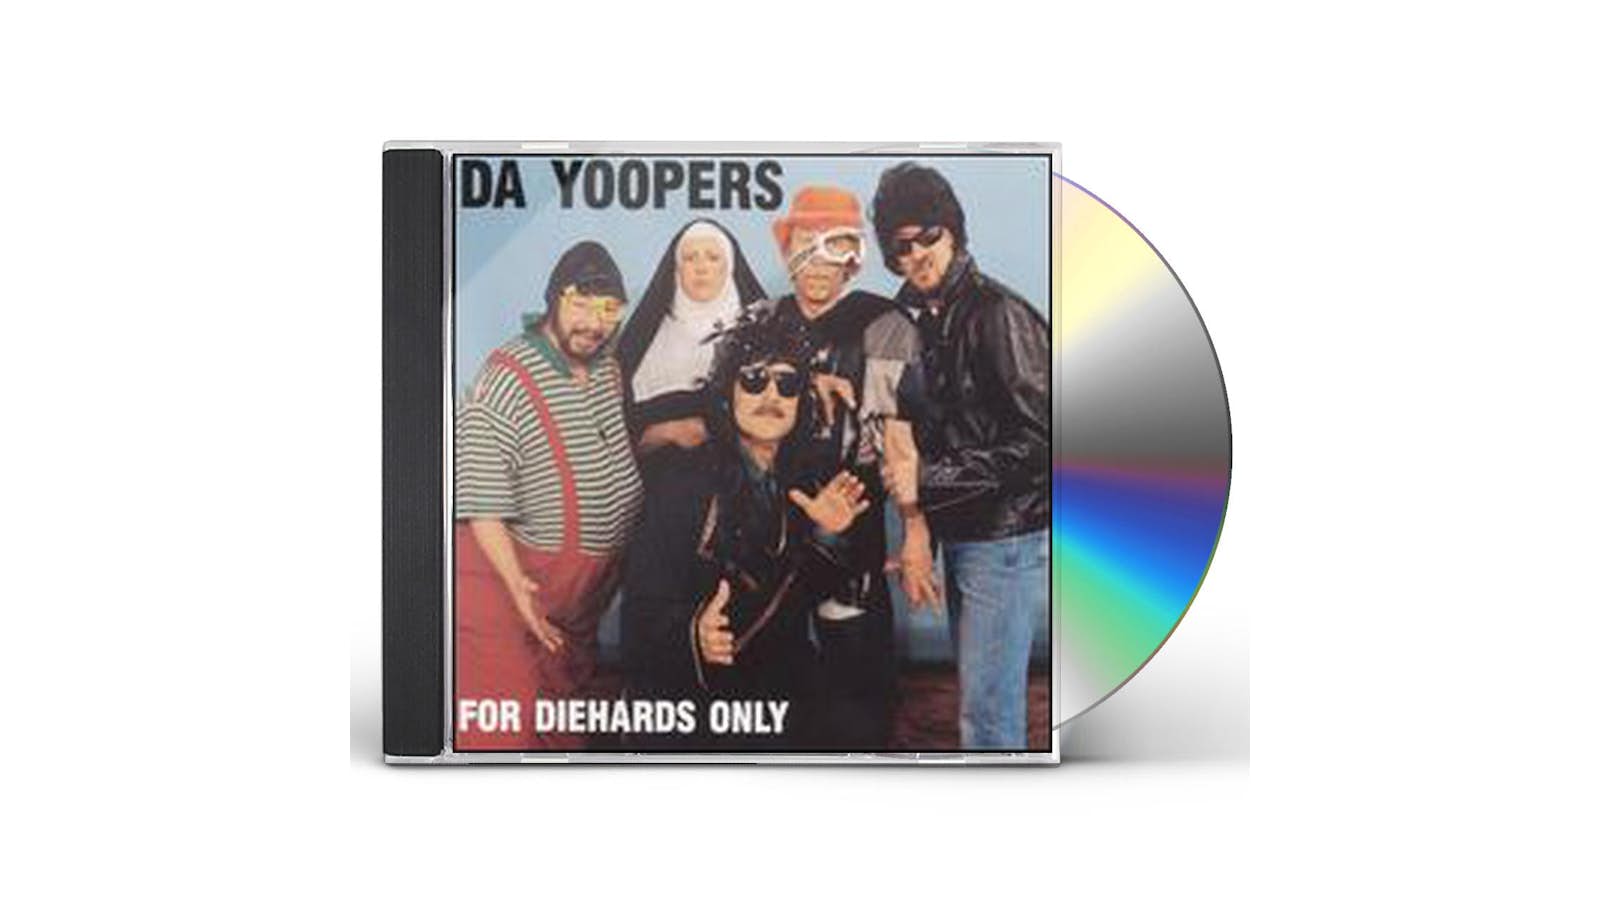 Da Yoopers FOR DIEHARDS ONLY CD